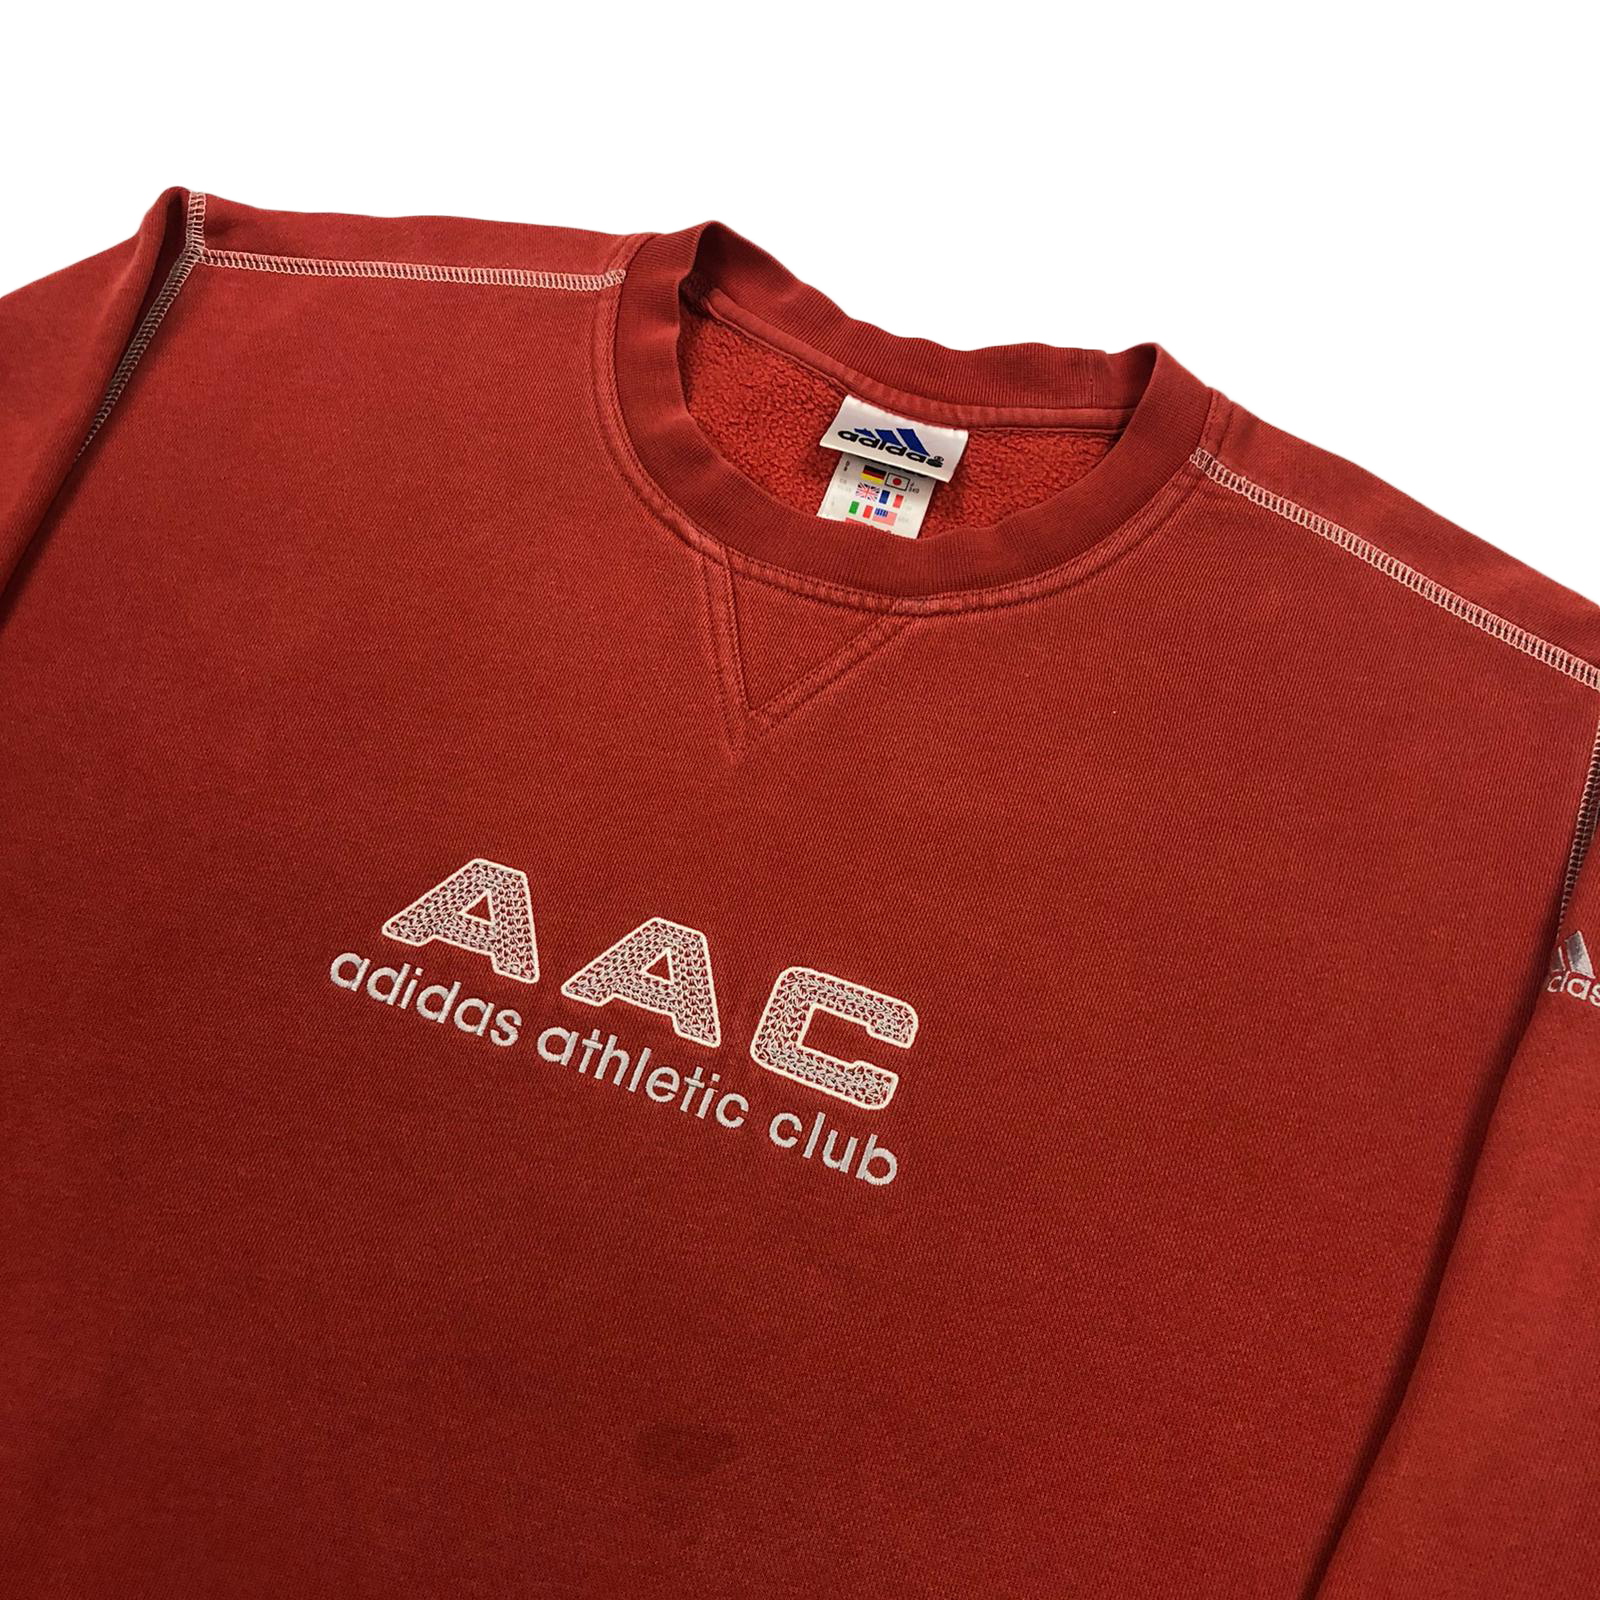 Adidas AAC sweatshirt